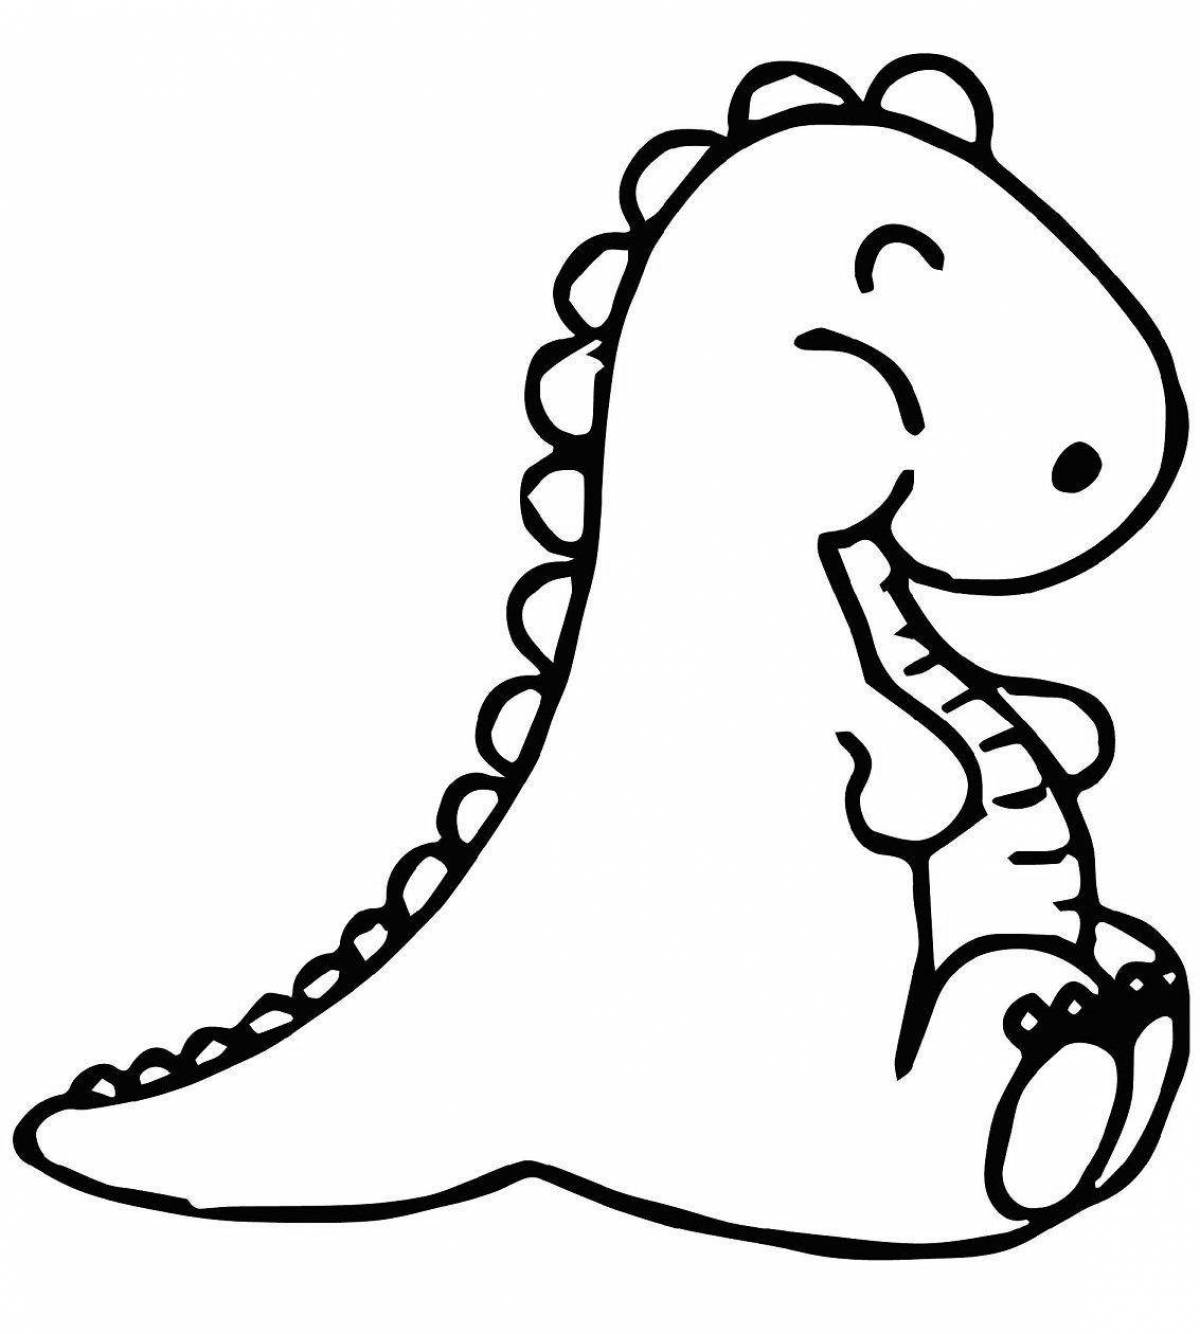 Яркая раскраска динозавр маленький